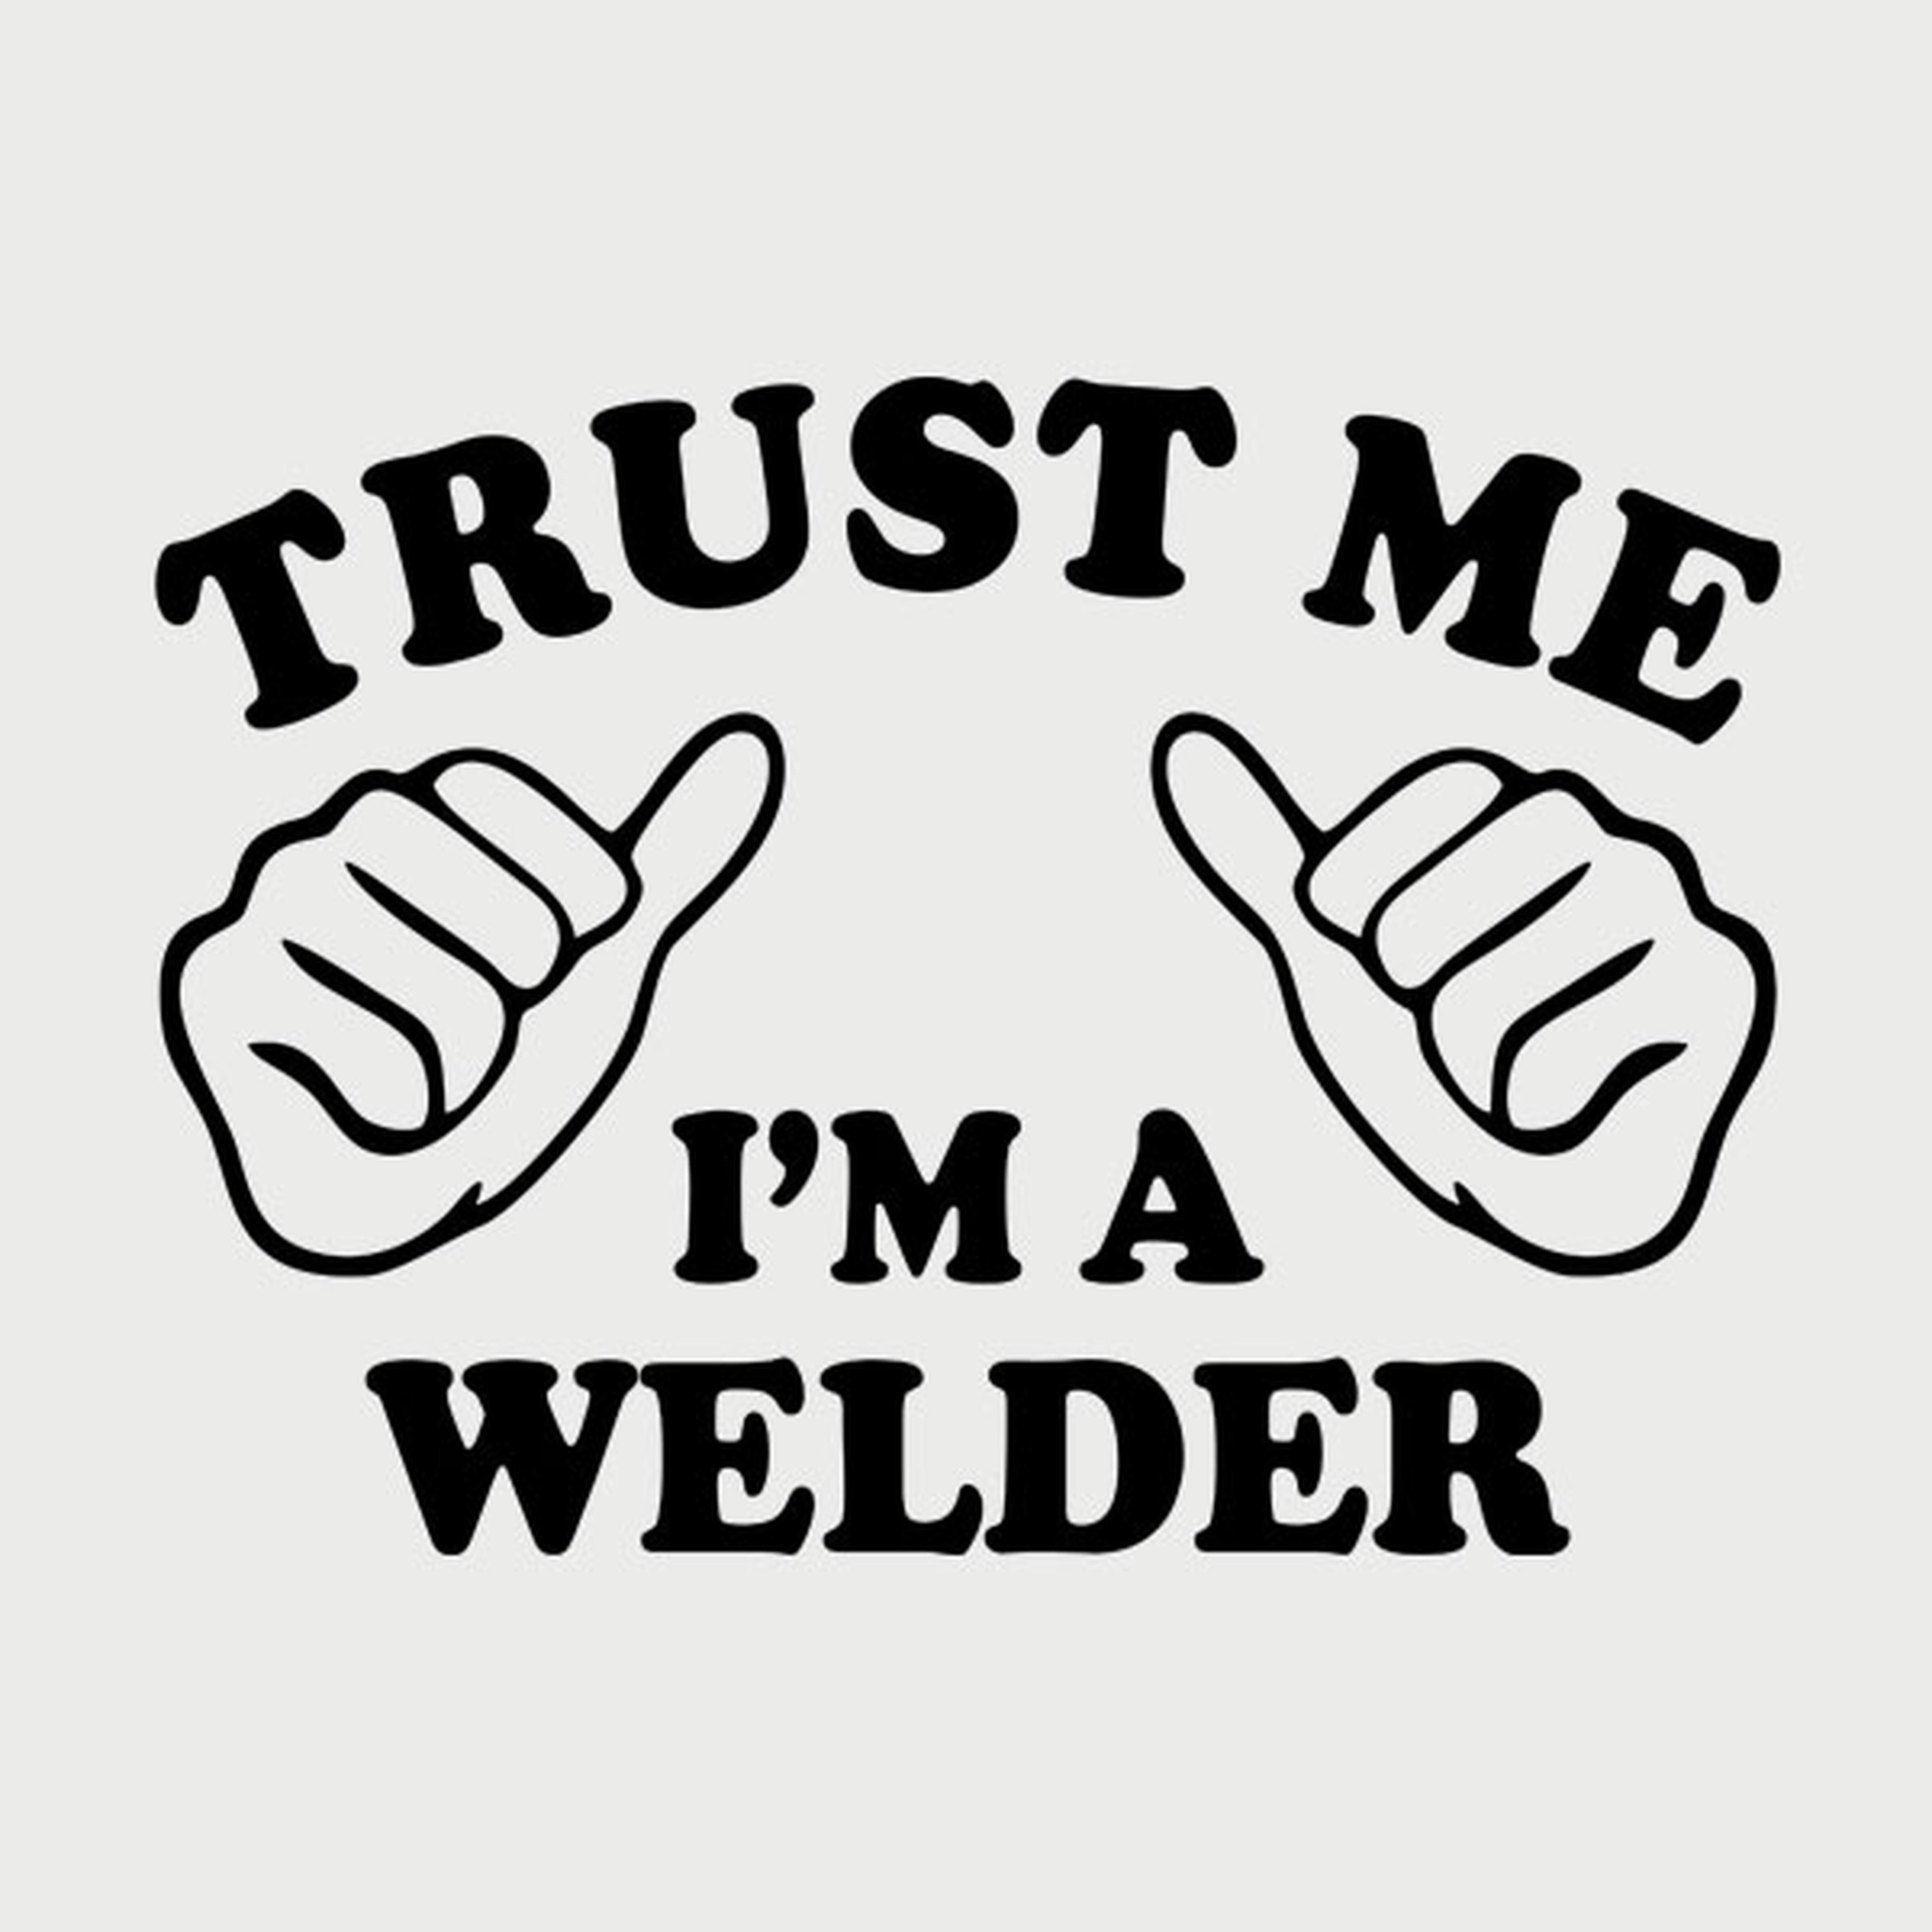 Trust me - I am a welder - T-shirt